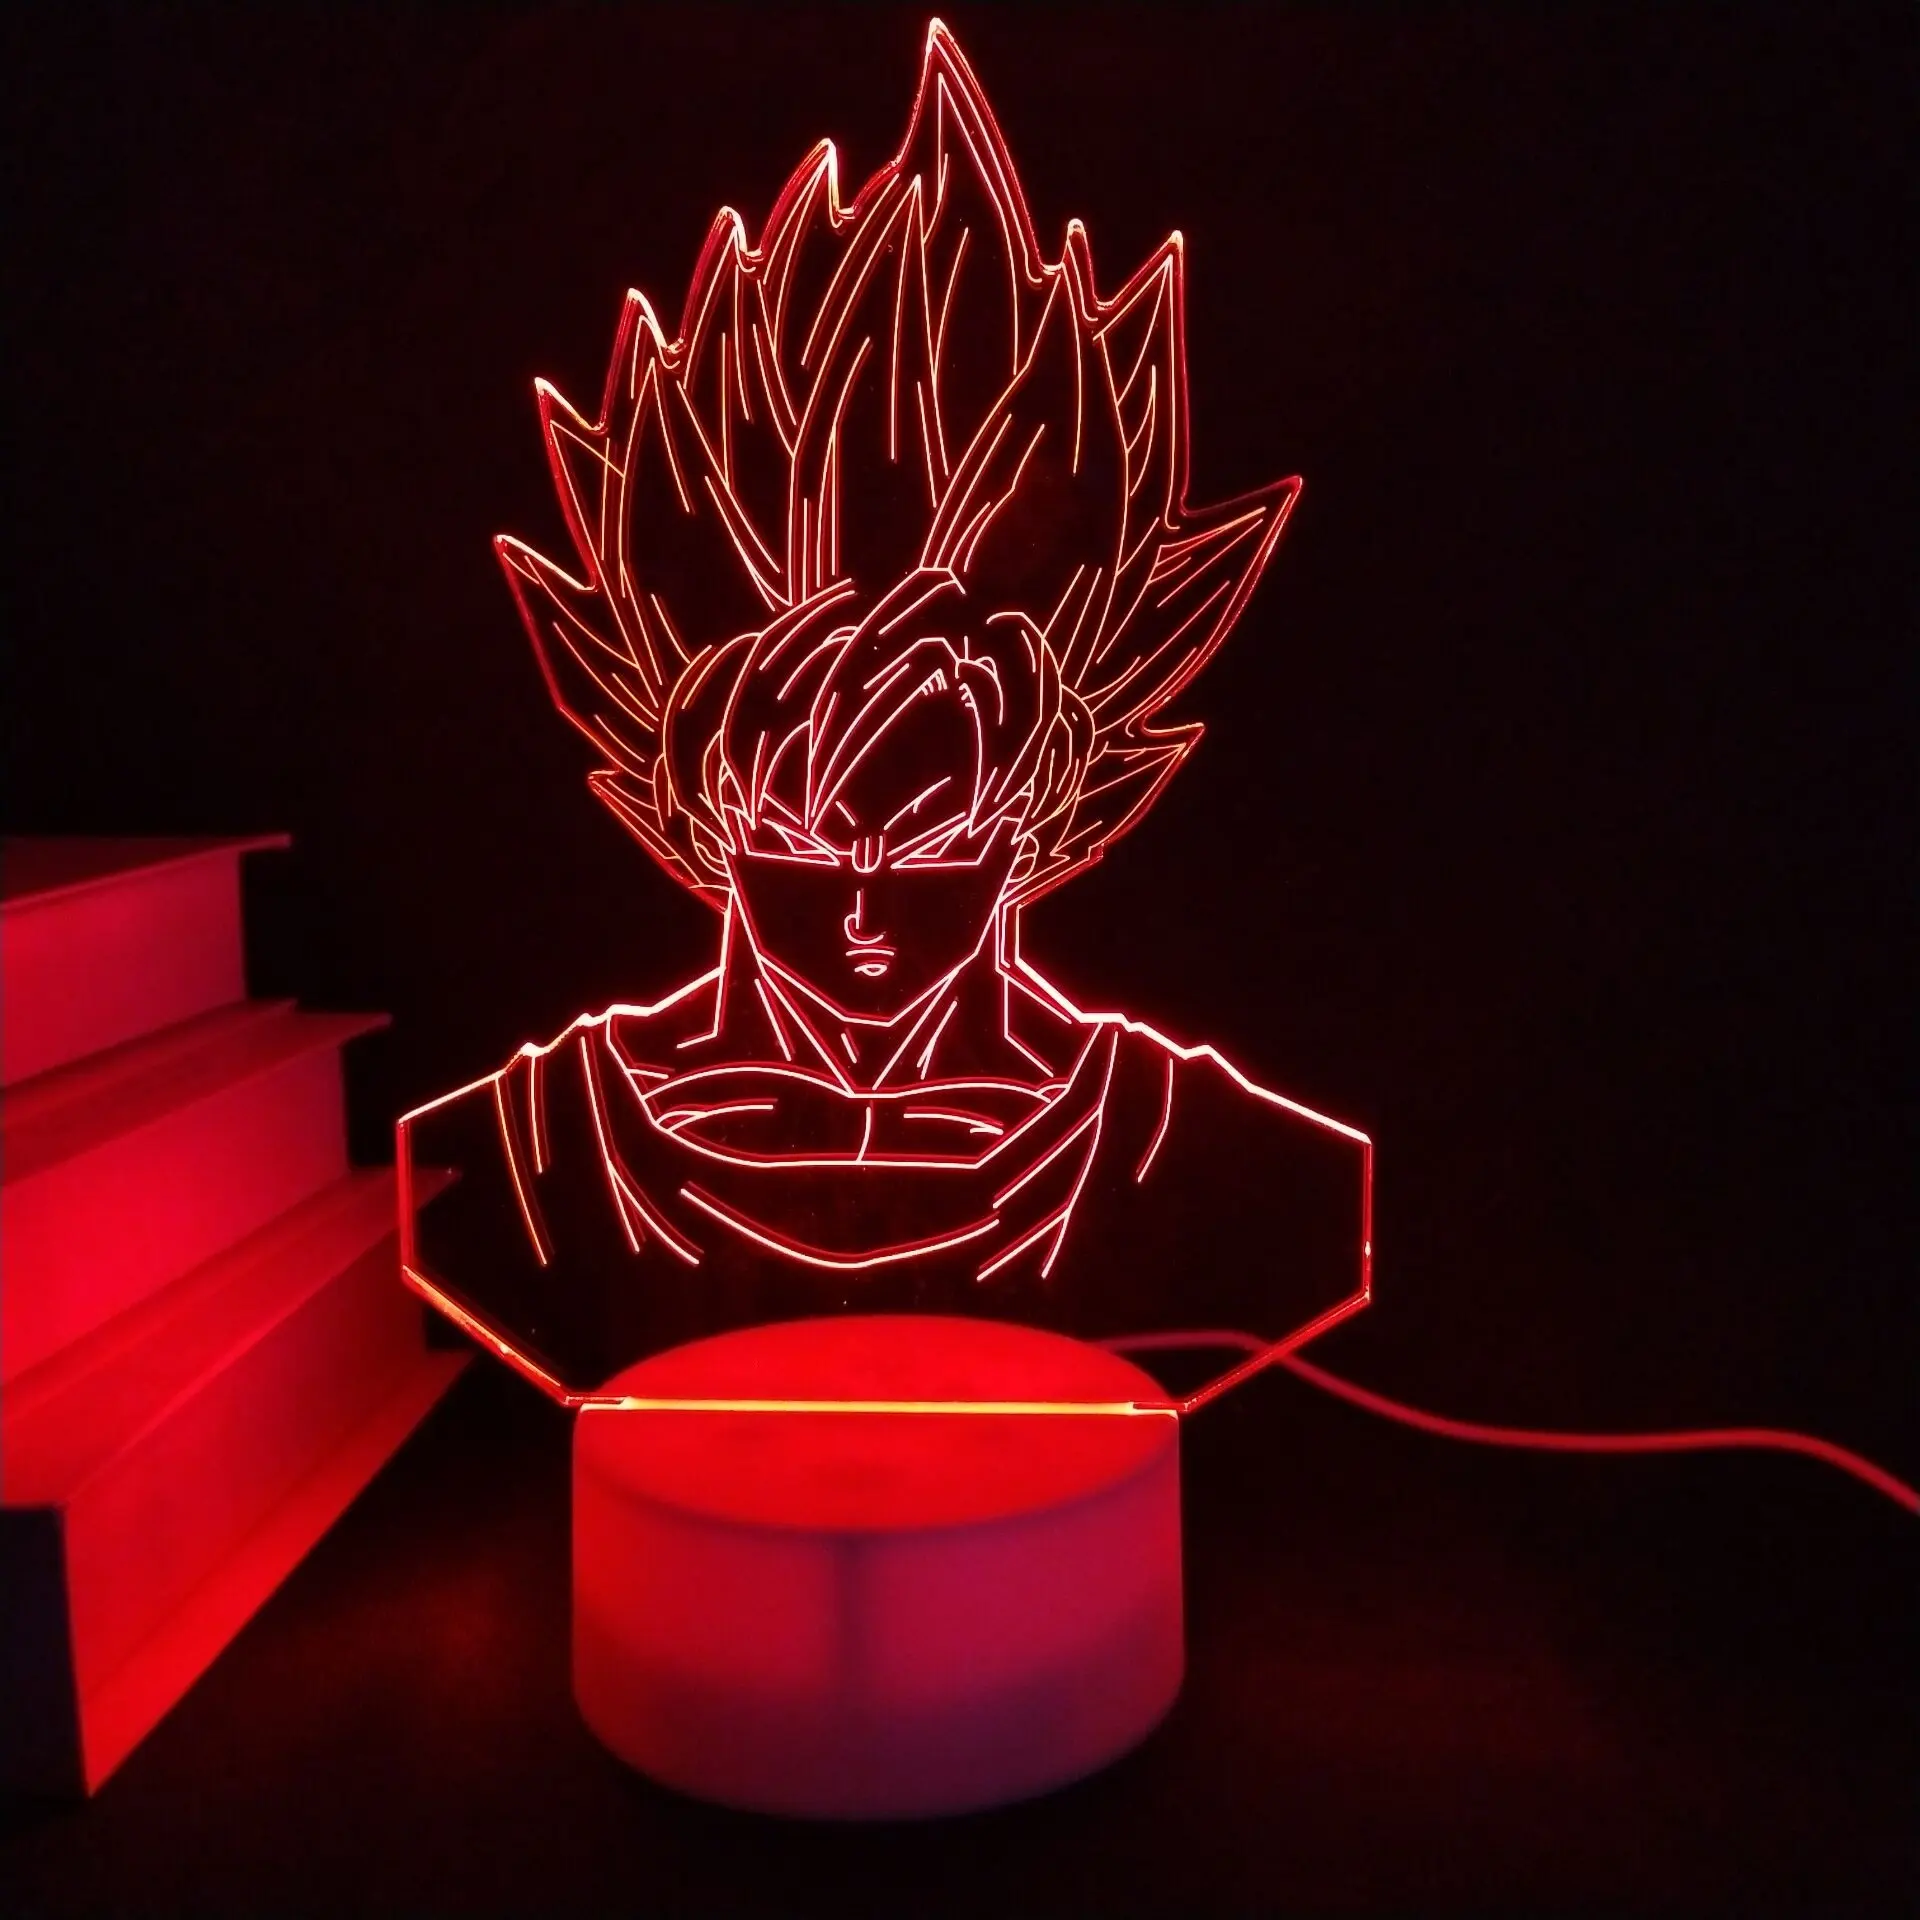 Hot Sale Anime Acrylic 3D Led Night Light Table Lamp for Children Kids Gift Bedroom Light